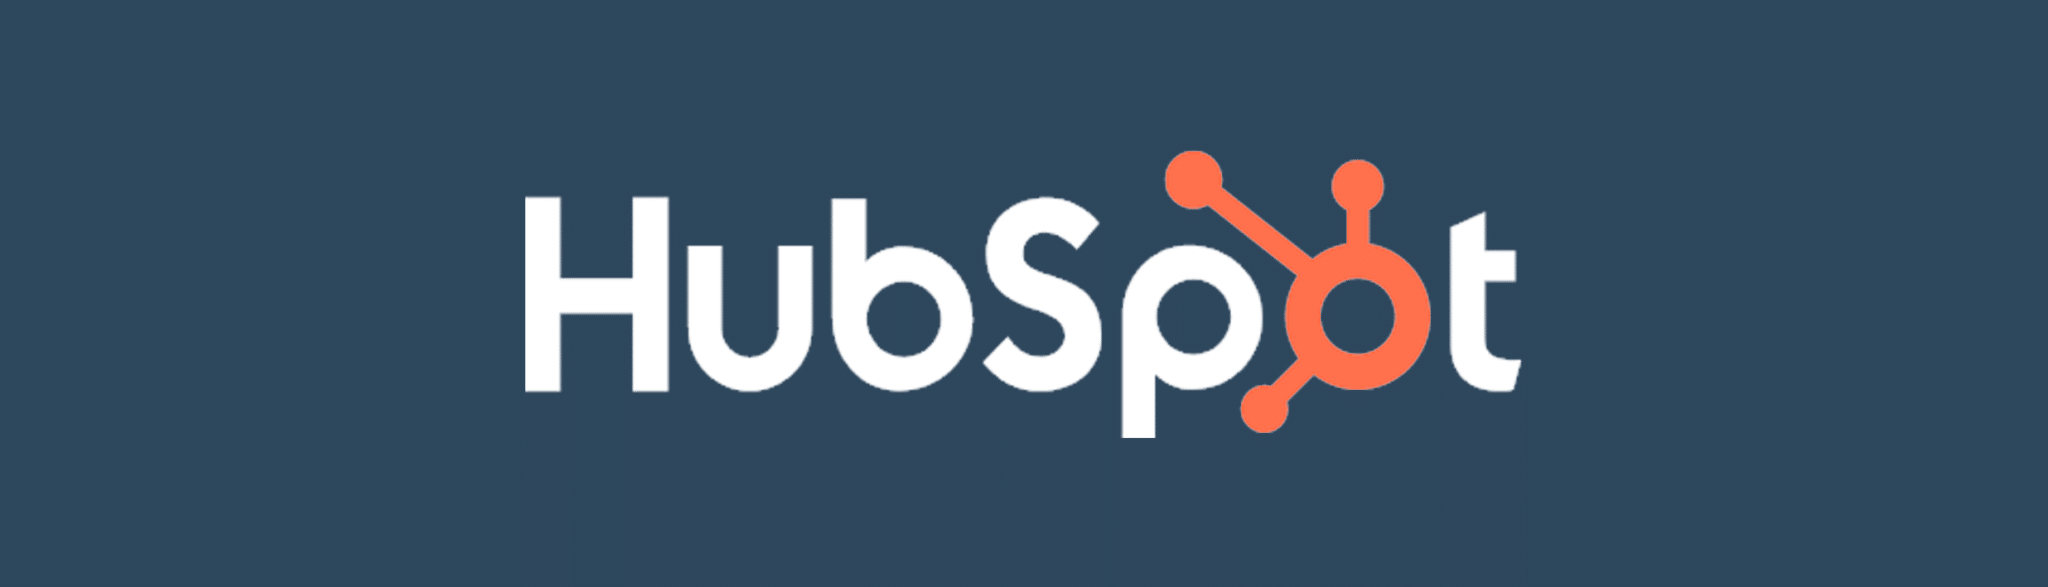 Inbound marketing - HubSpot